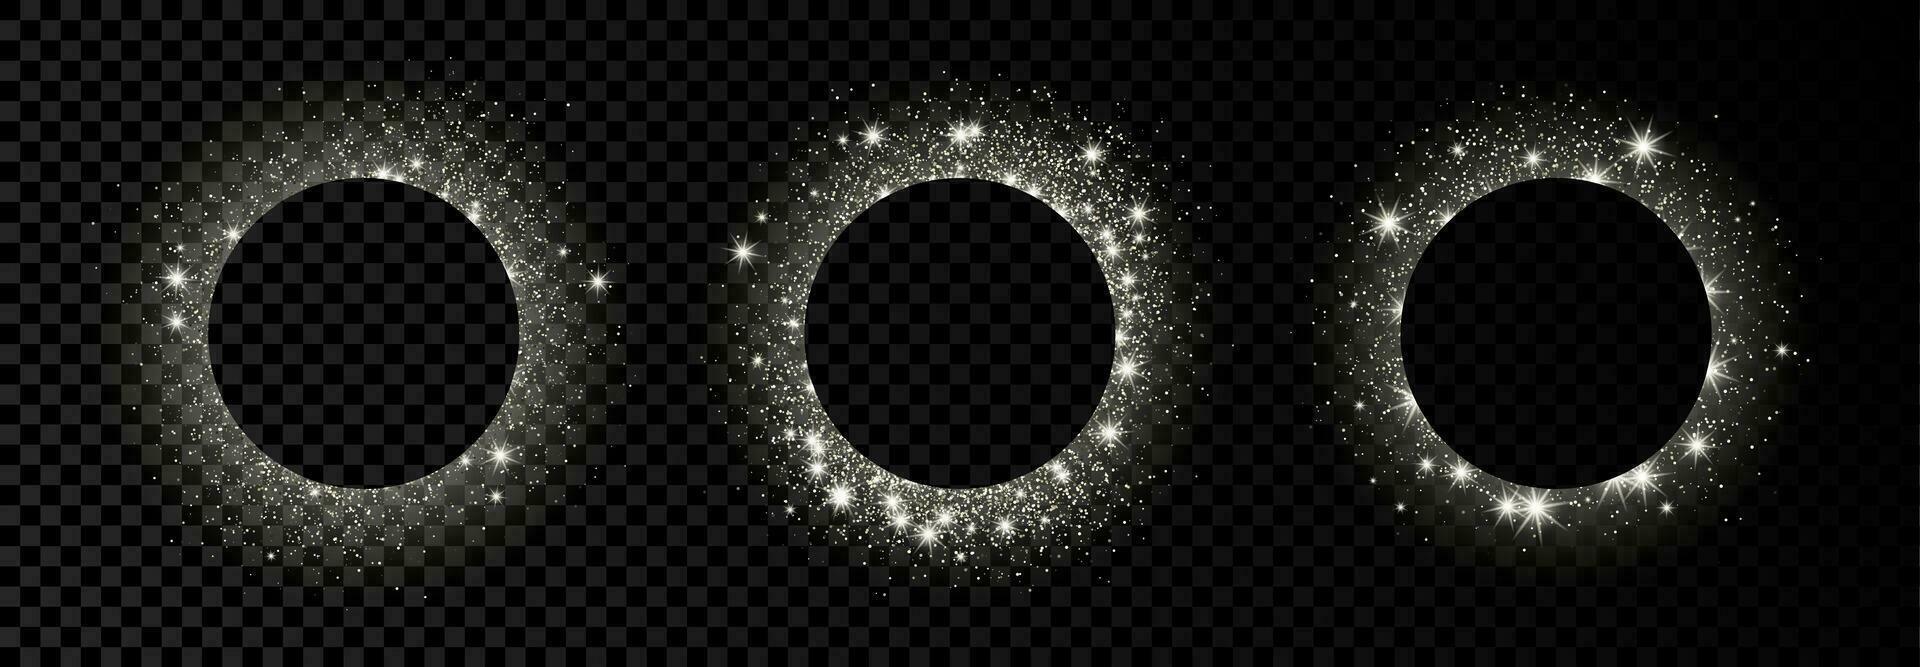 uppsättning av tre silver- cirkel ramar med glitter, pärlar och bloss på mörk bakgrund. tömma lyx bakgrund. vektor illustration.